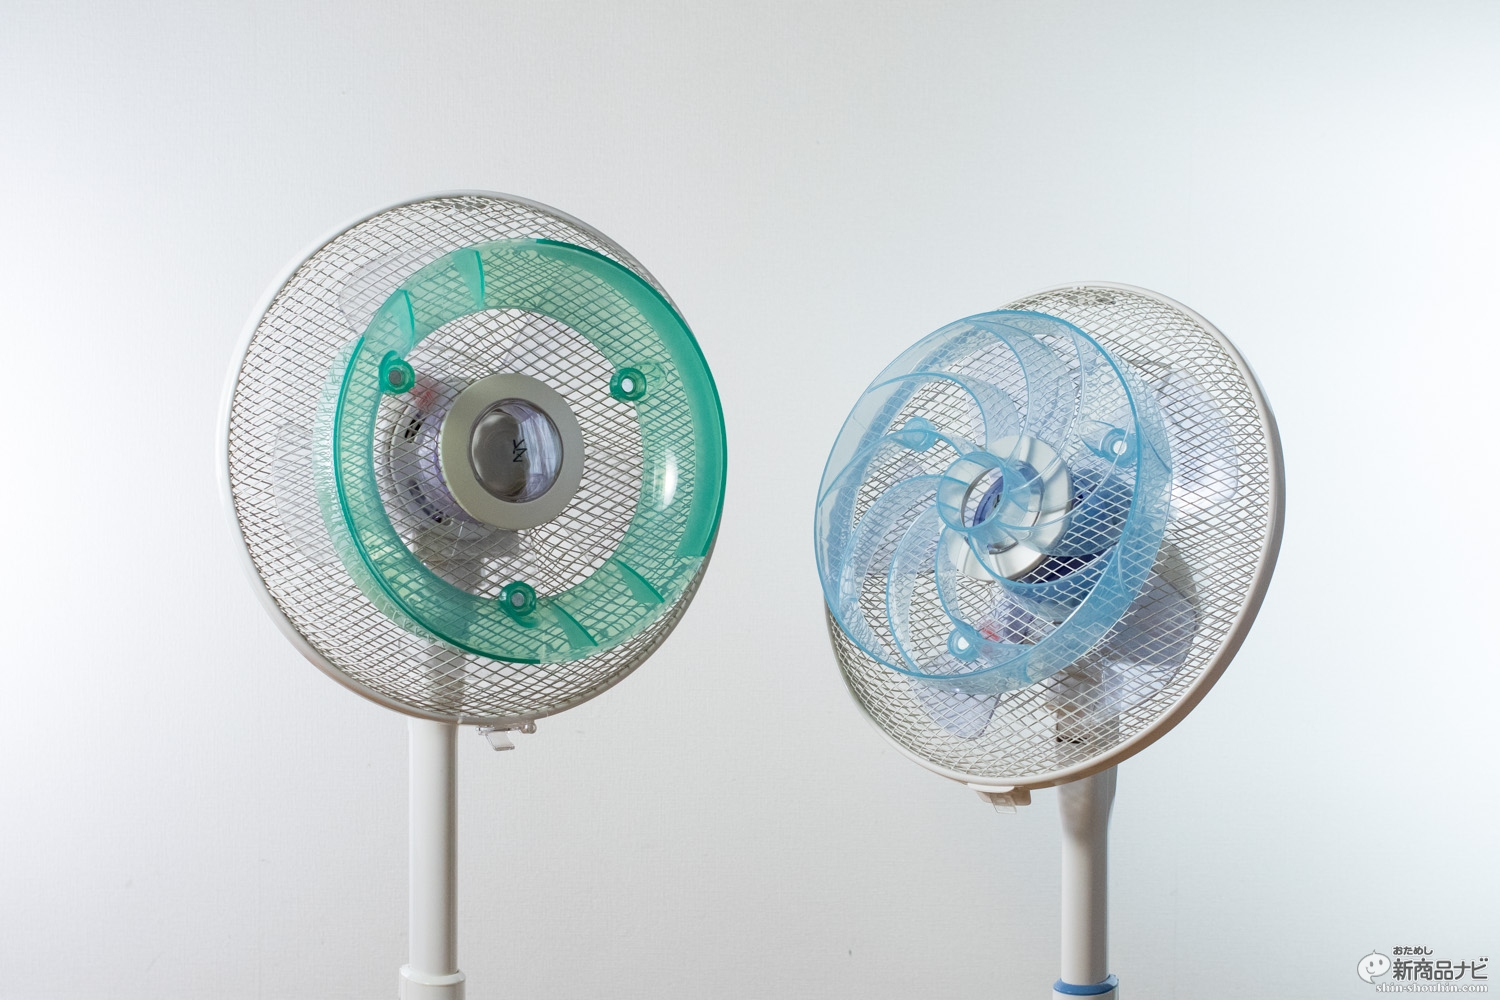 おためし新商品ナビ » Blog Archive » 今ある扇風機を活かして高機能化する『快風！強（つよ）マリーナ』『そよ風！広（ひろ）ガリーナ 』を検証！